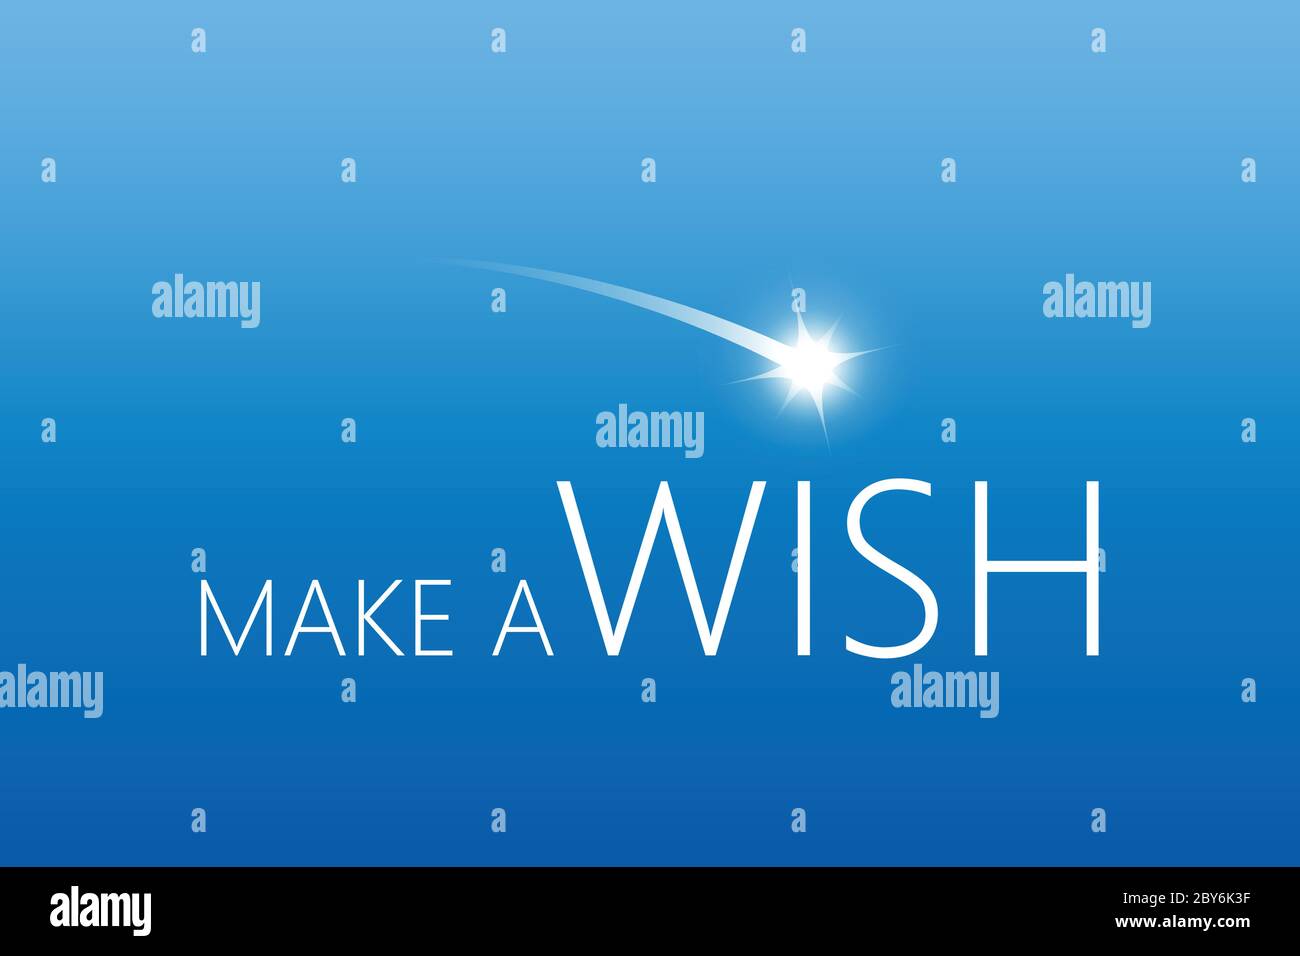 Machen Sie einen Wunsch, mit fallender Stern im Himmel Vektor-illustration EPS 10. Stock Vektor